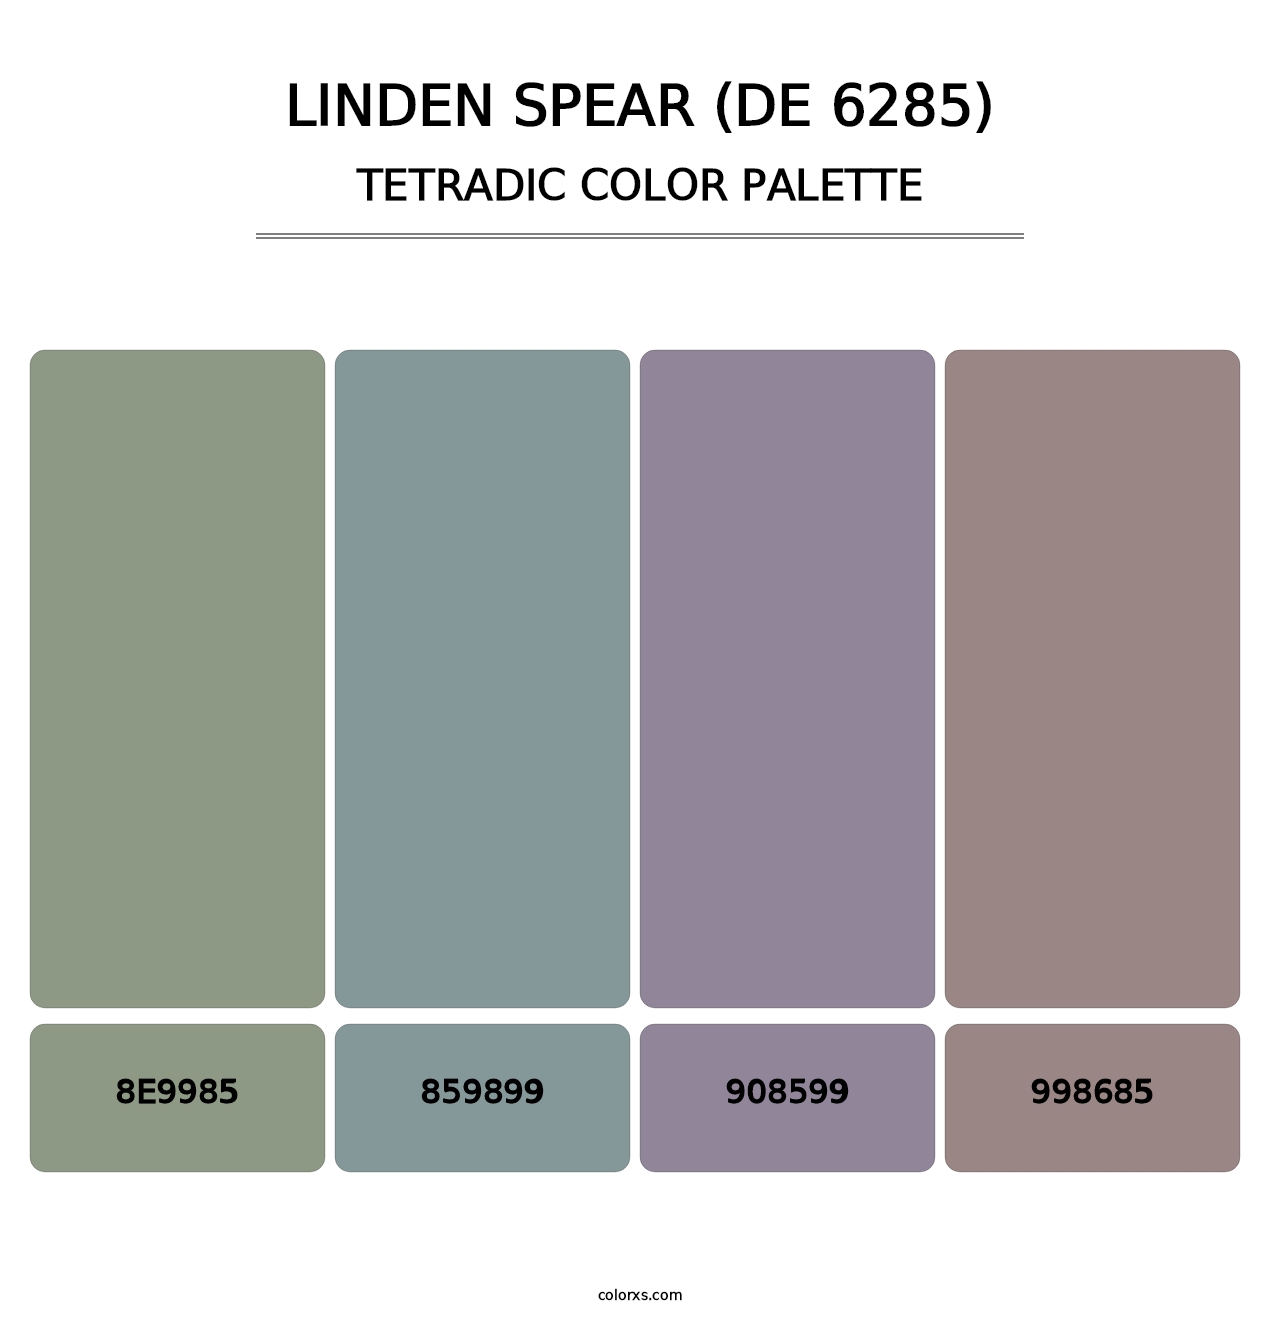 Linden Spear (DE 6285) - Tetradic Color Palette